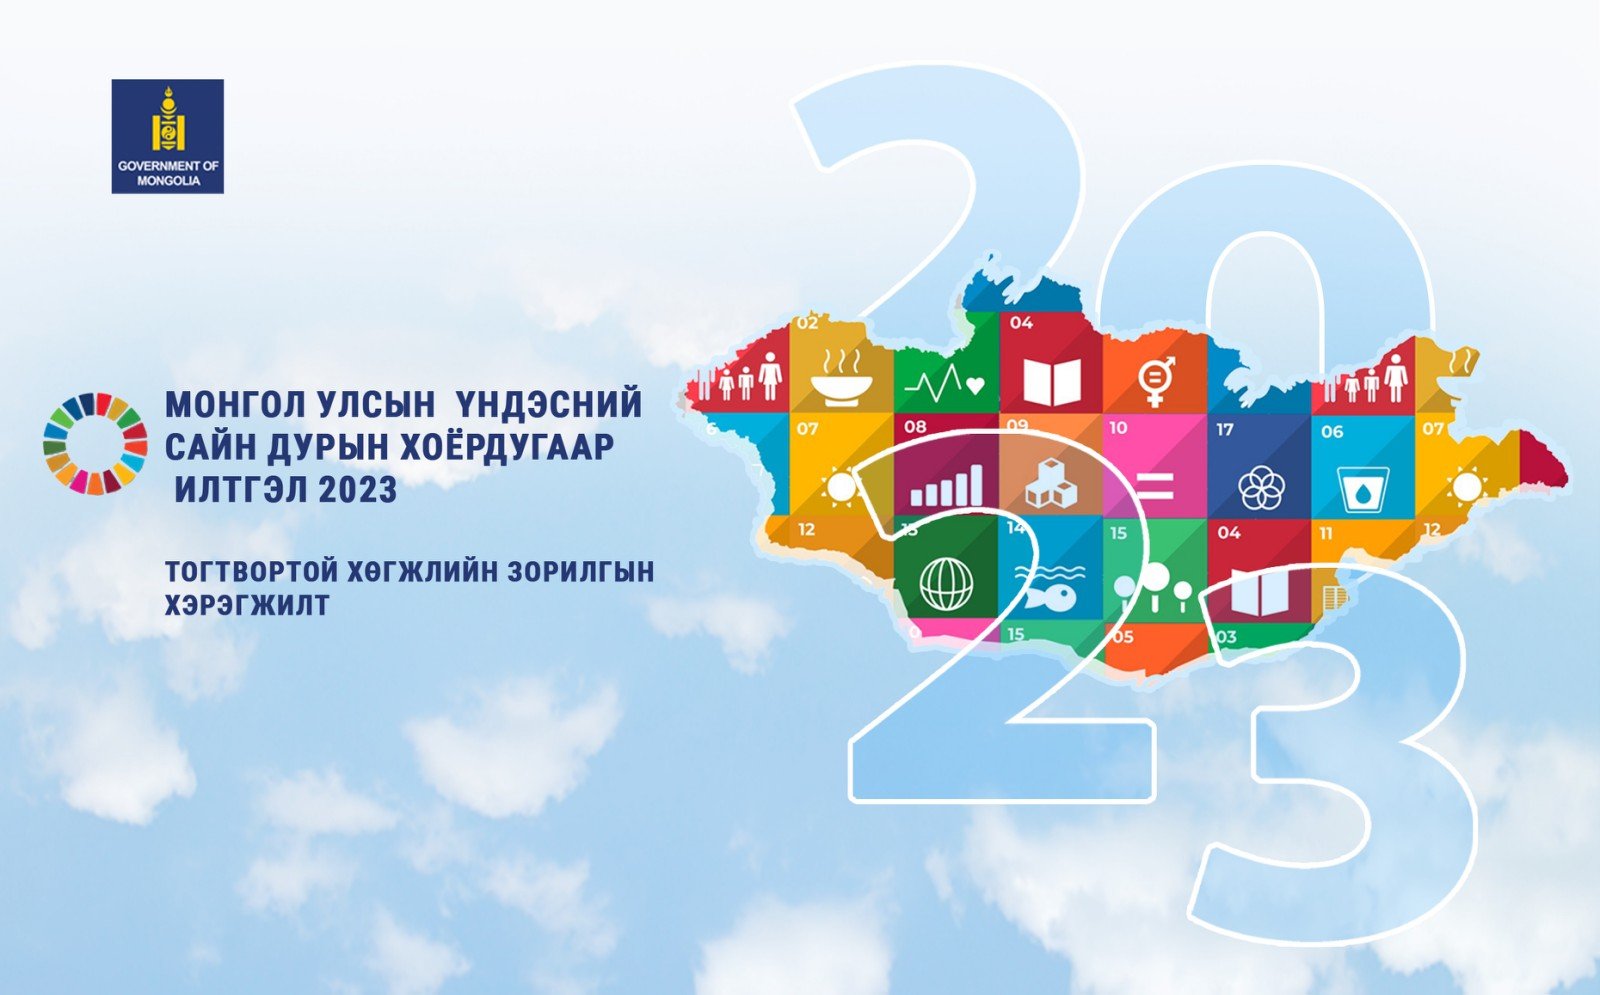 Монгол Улсын Үндэсний сайн дурын илтгэл 2023: Тогтвортой хөгжлийн зорилгын хэрэгжилт 